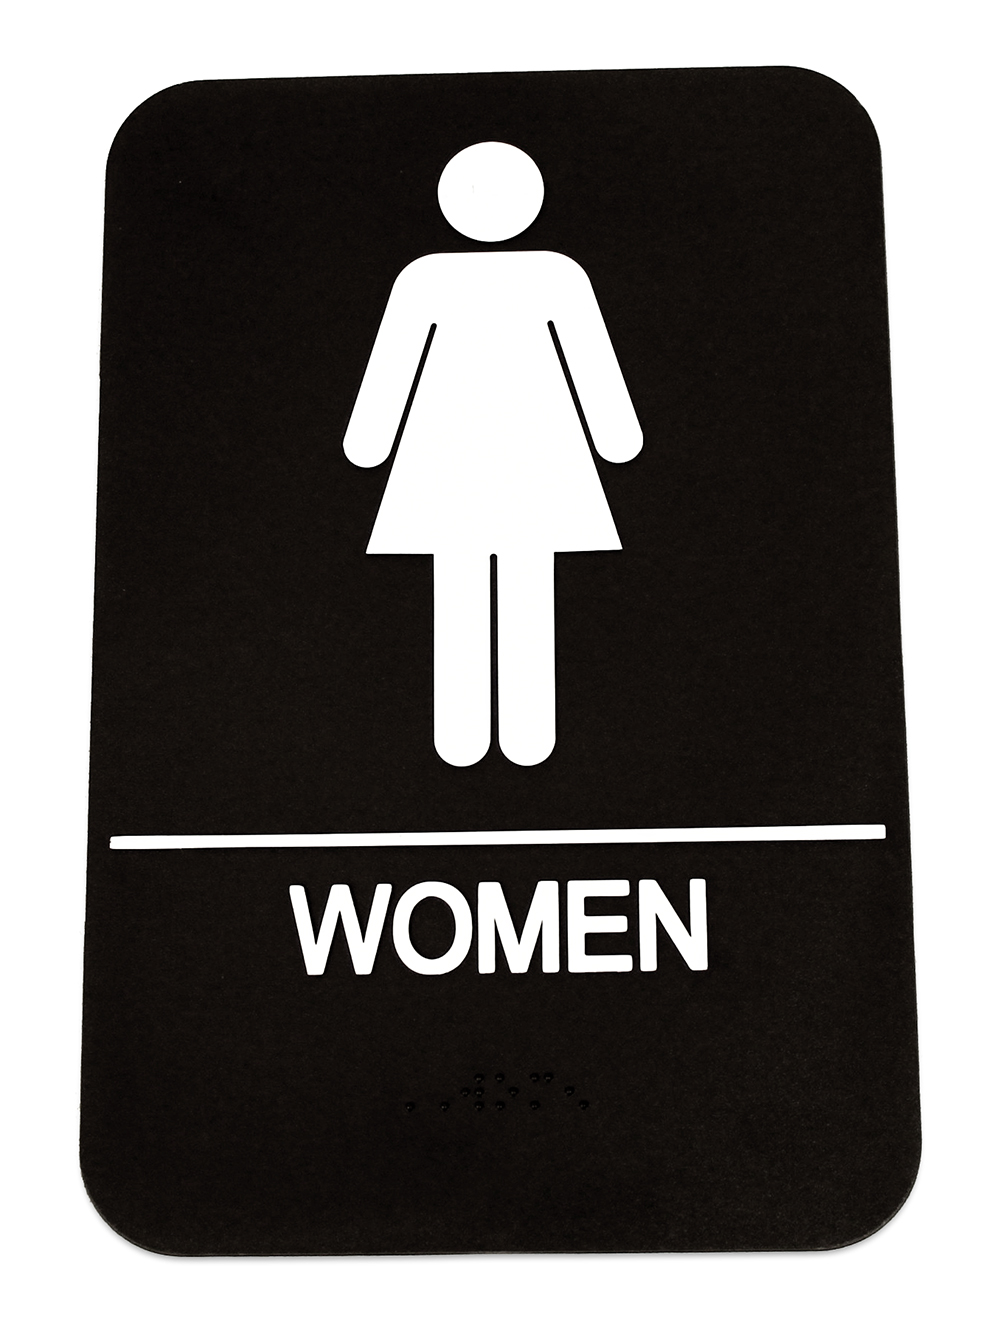 Women\'s Restroom Sign